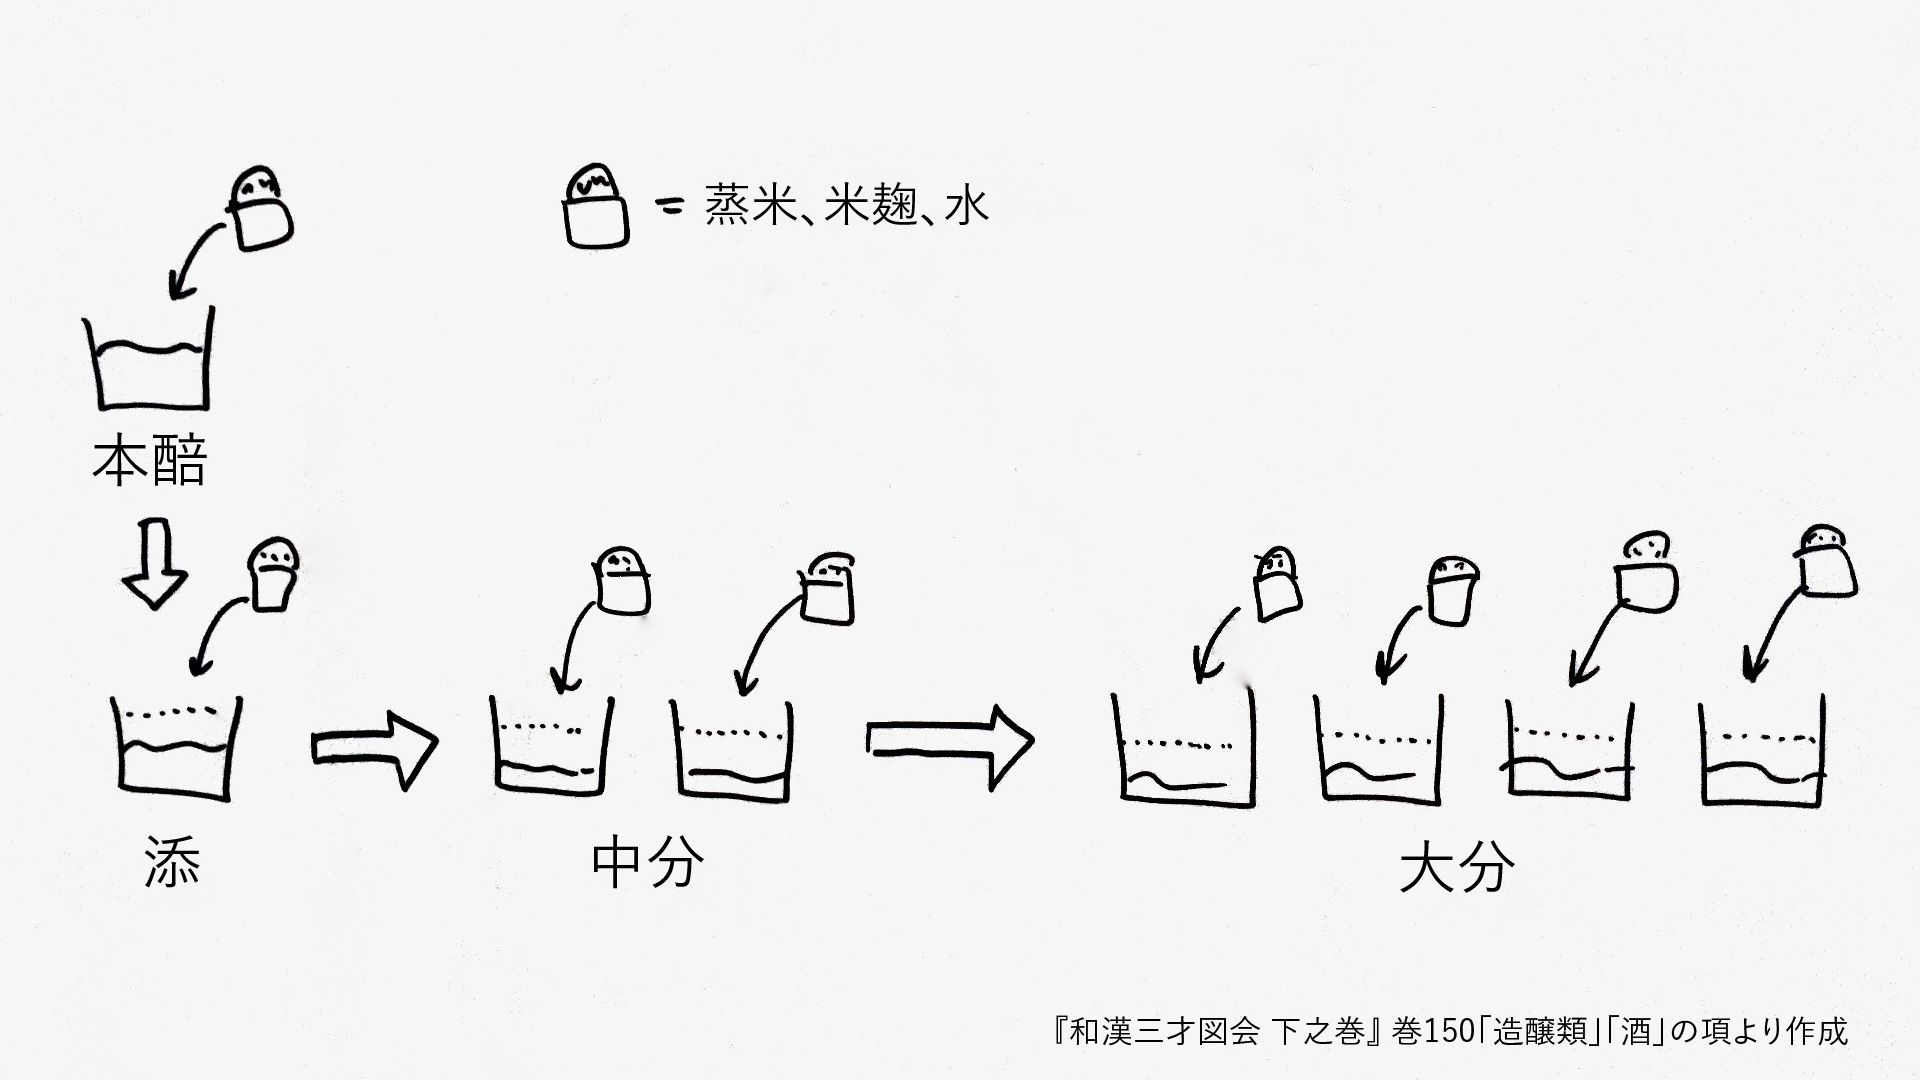 和漢三才図会に見る江戸時代の酒造りの方法